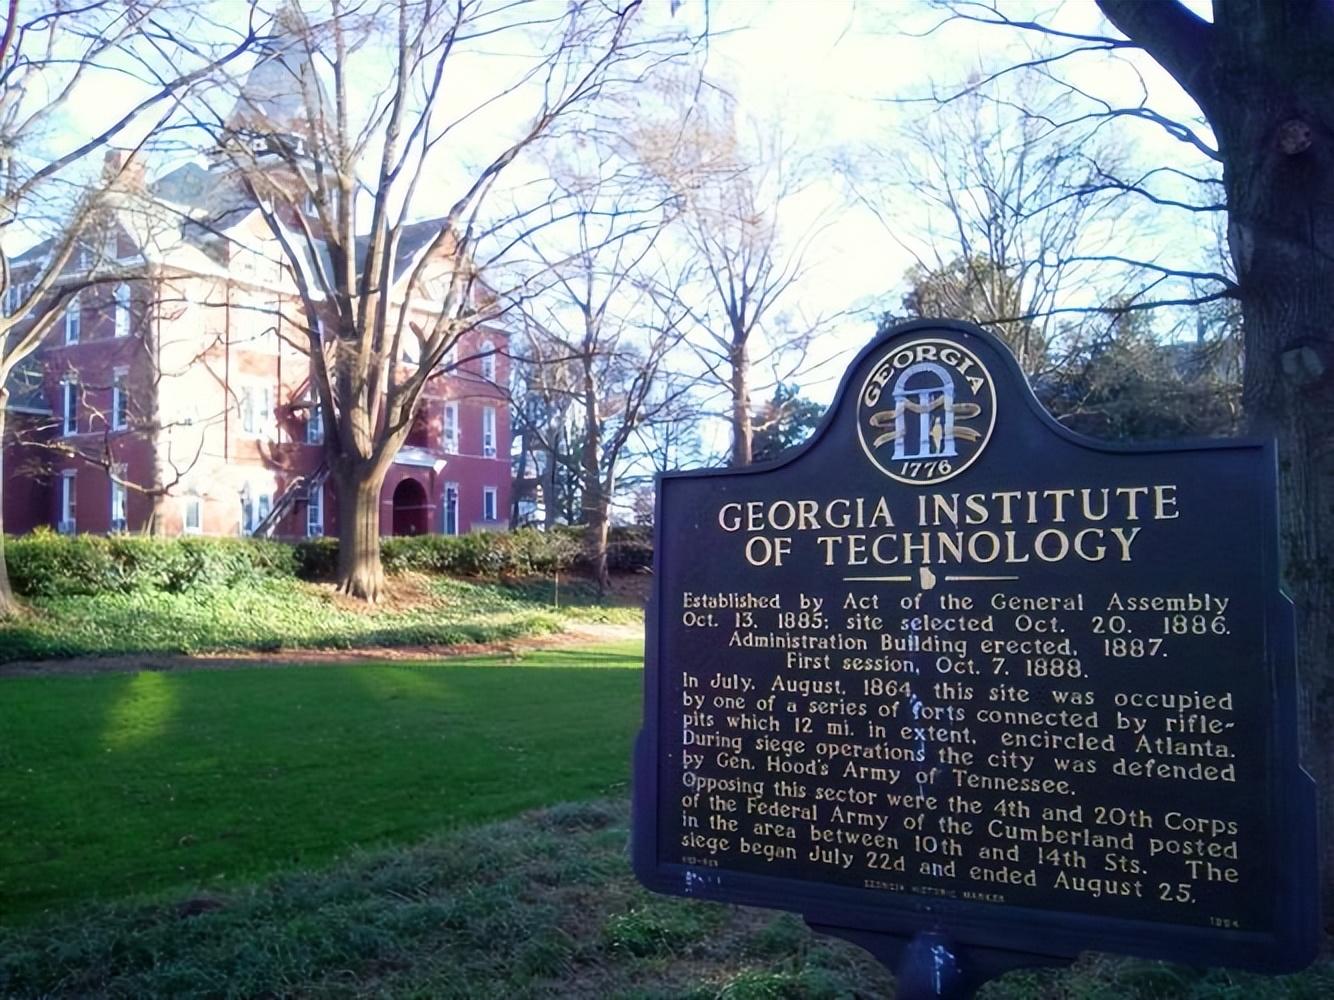 佐治亚大学——创建于1785年，佐治亚州大学系统的旗舰学府